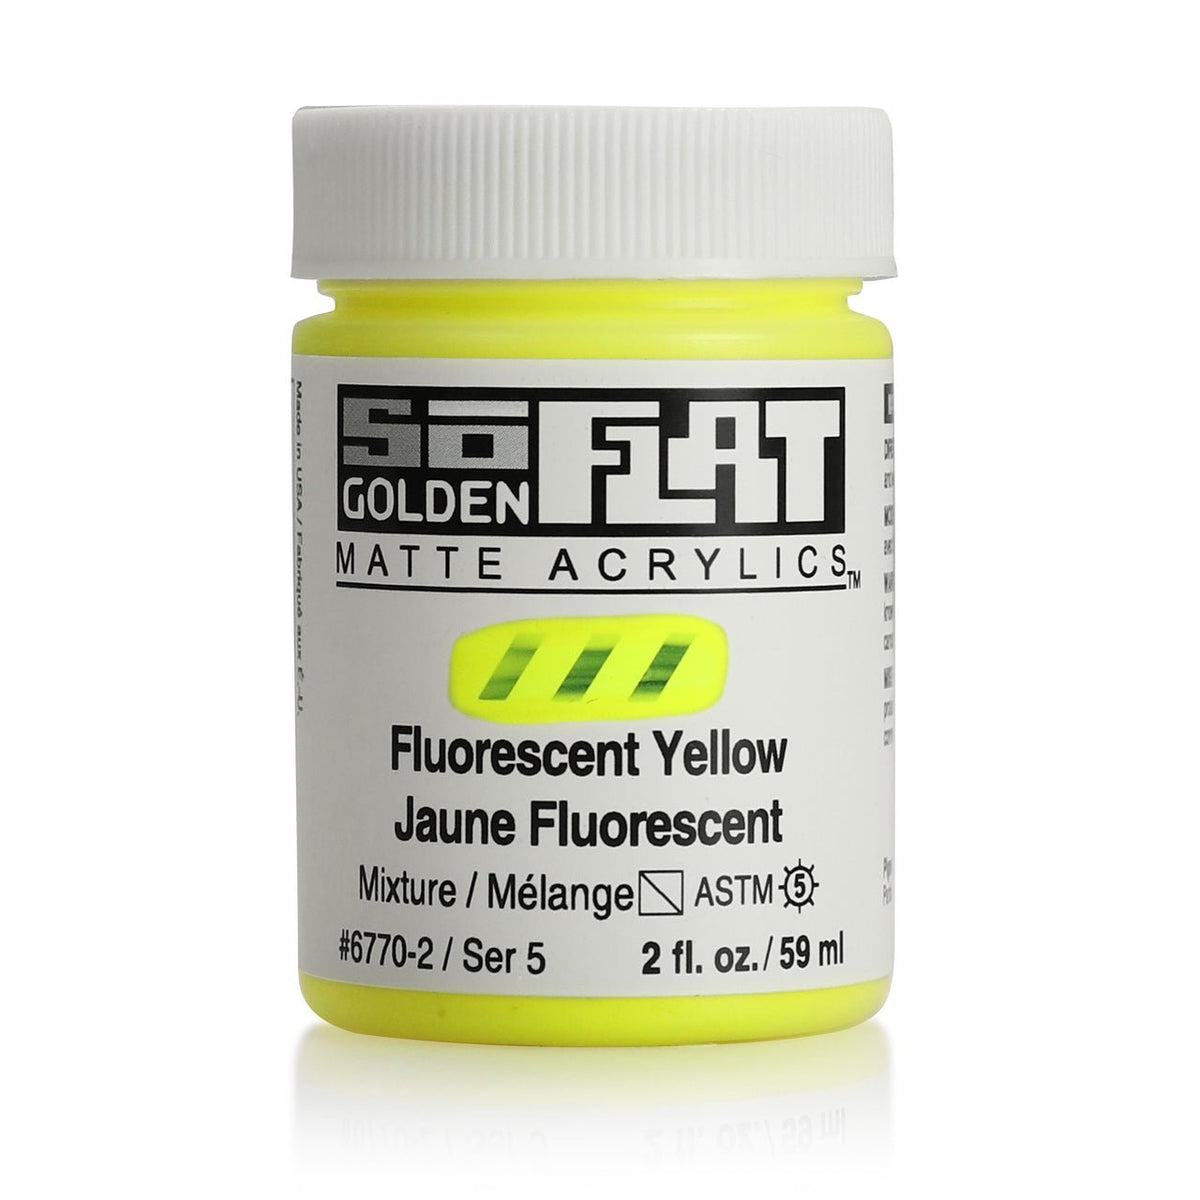 Golden SoFlat Matte Acrylic Paint - Fluorescent Yellow 2 oz jar - merriartist.com